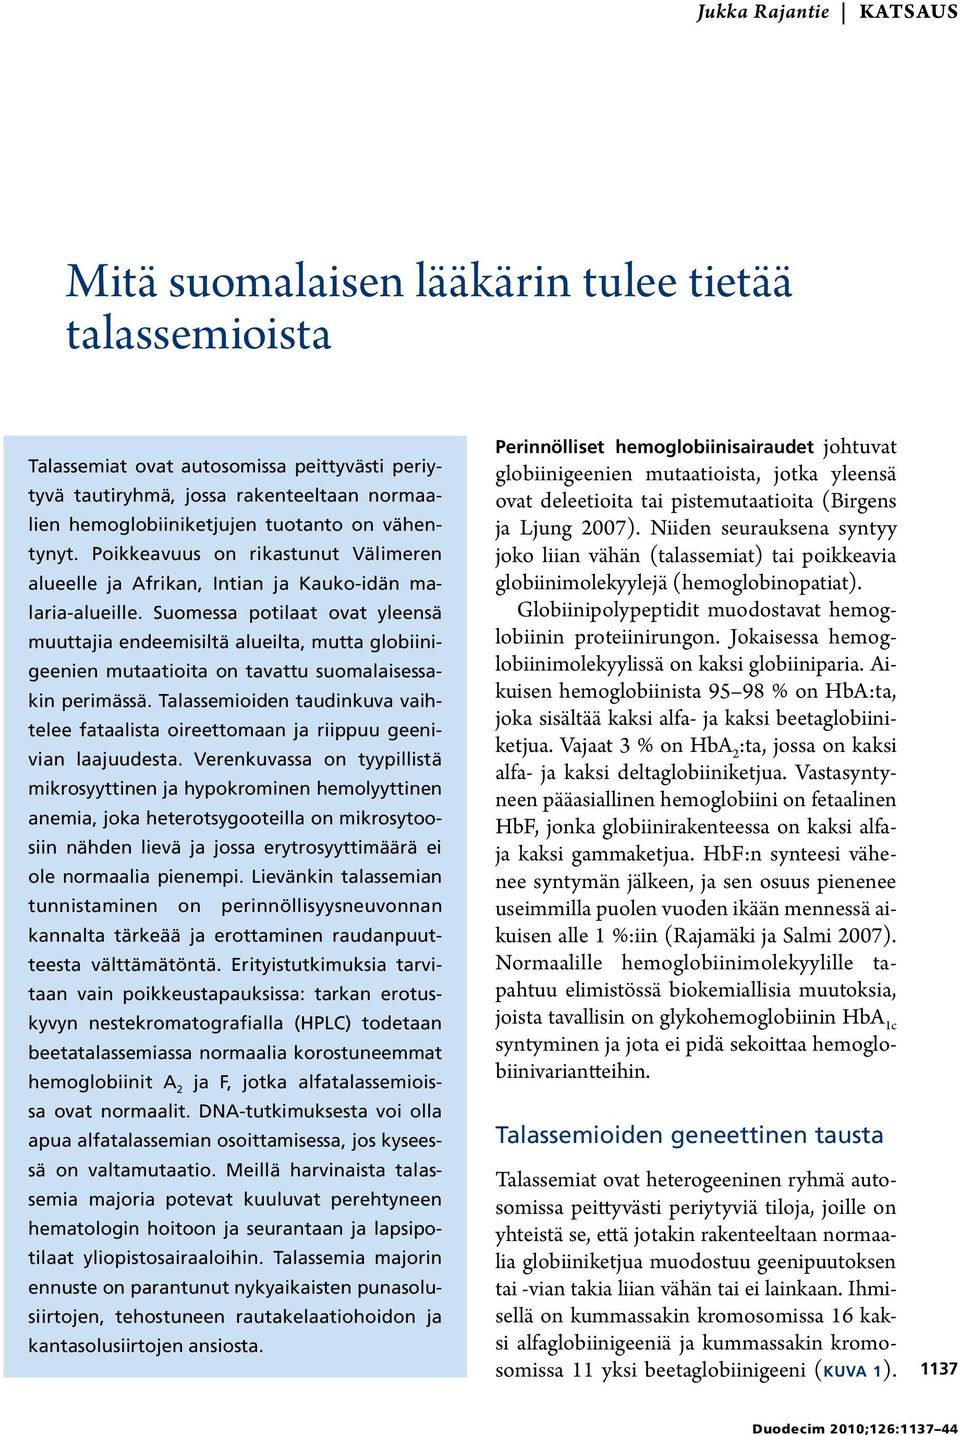 Suomessa potilaat ovat yleensä muuttajia endeemisiltä alueilta, mutta globiinigeenien mutaatioita on tavattu suomalaisessakin perimässä.